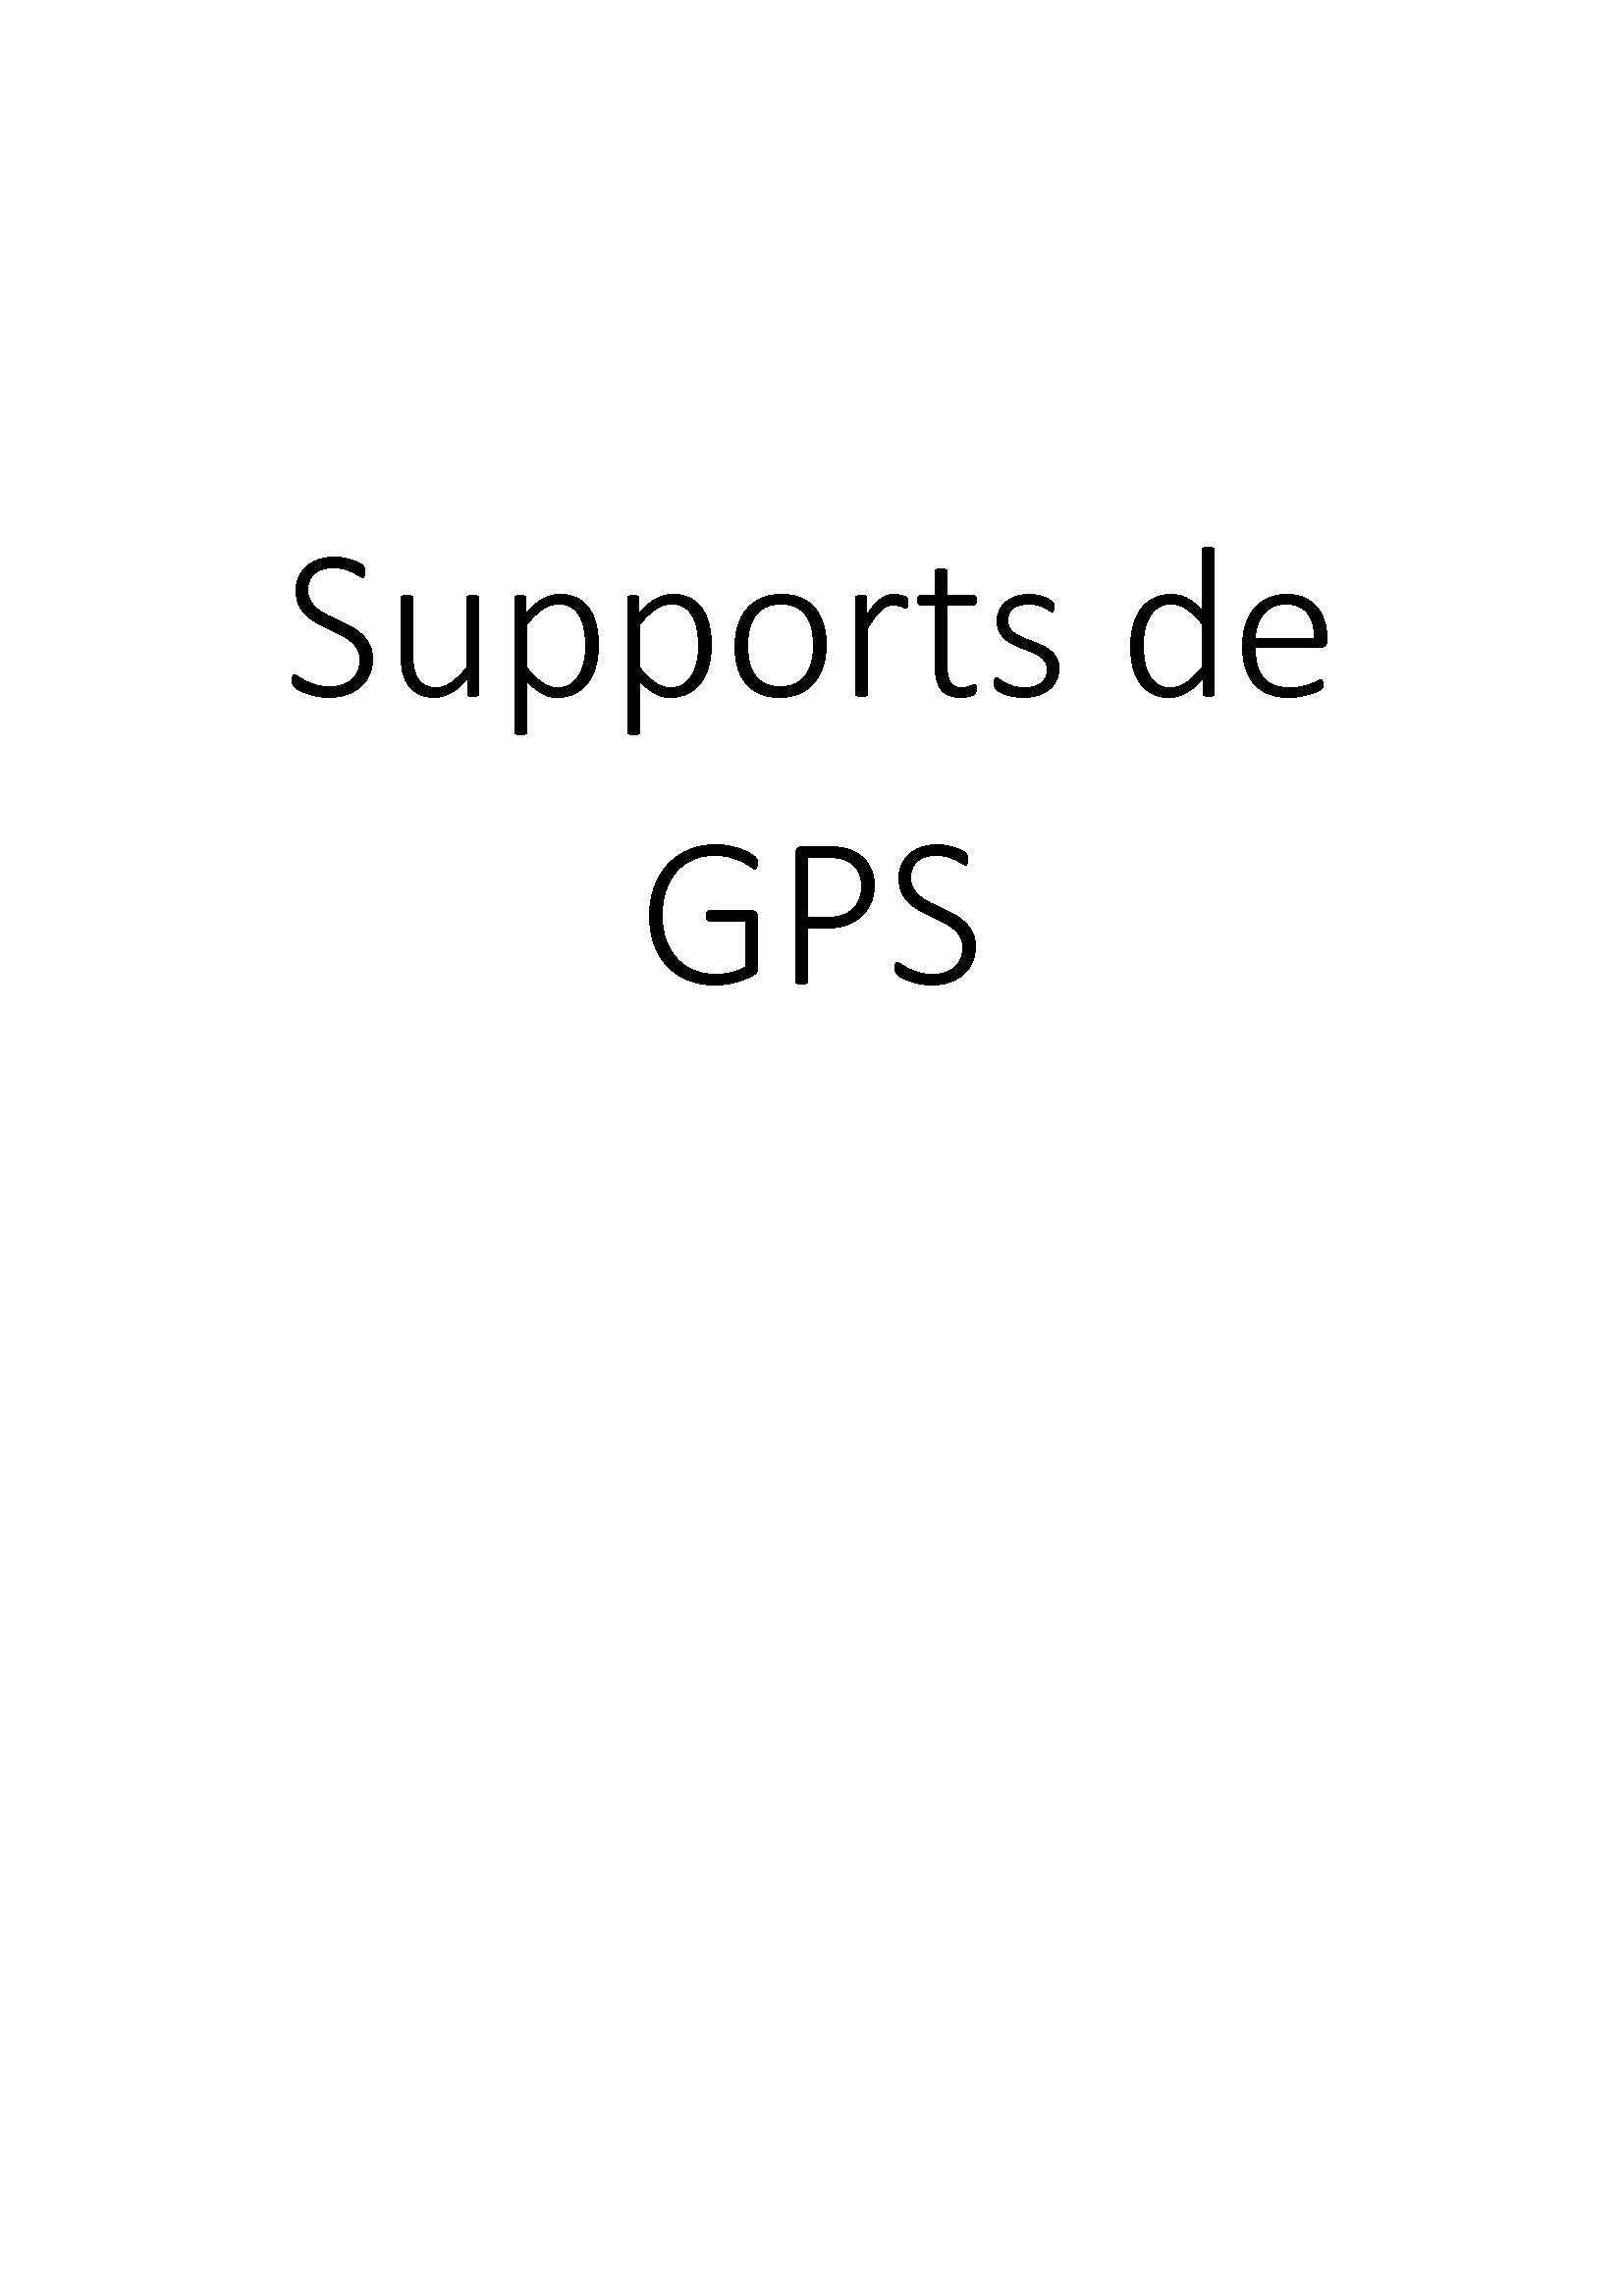 Supports de GPS clicktofournisseur.com